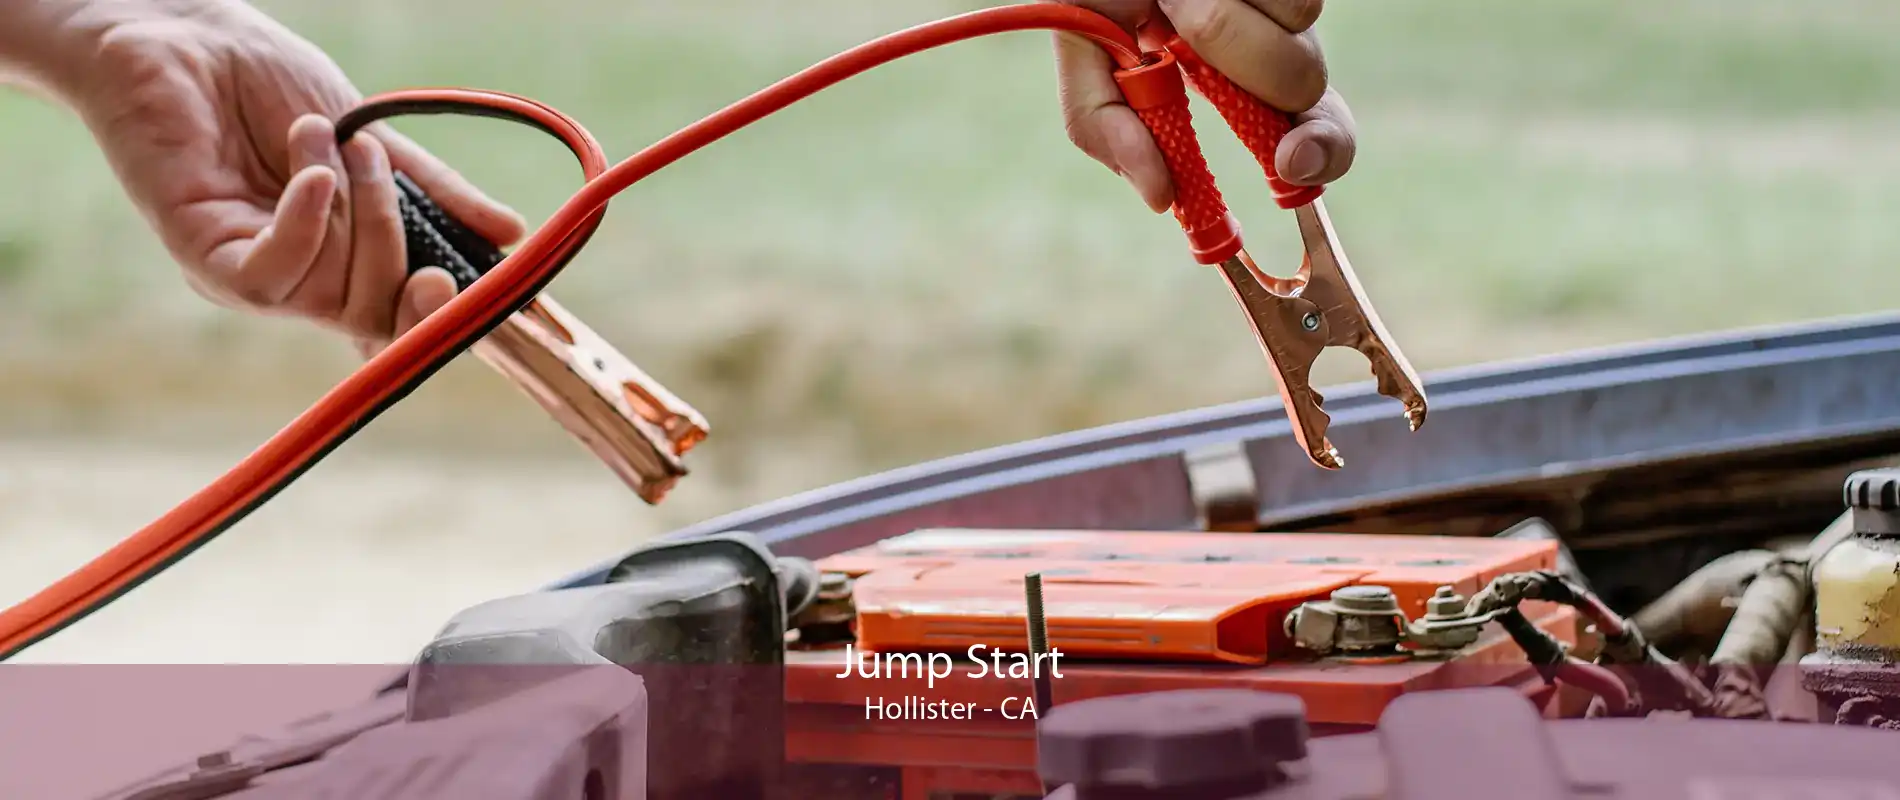 Jump Start Hollister - CA